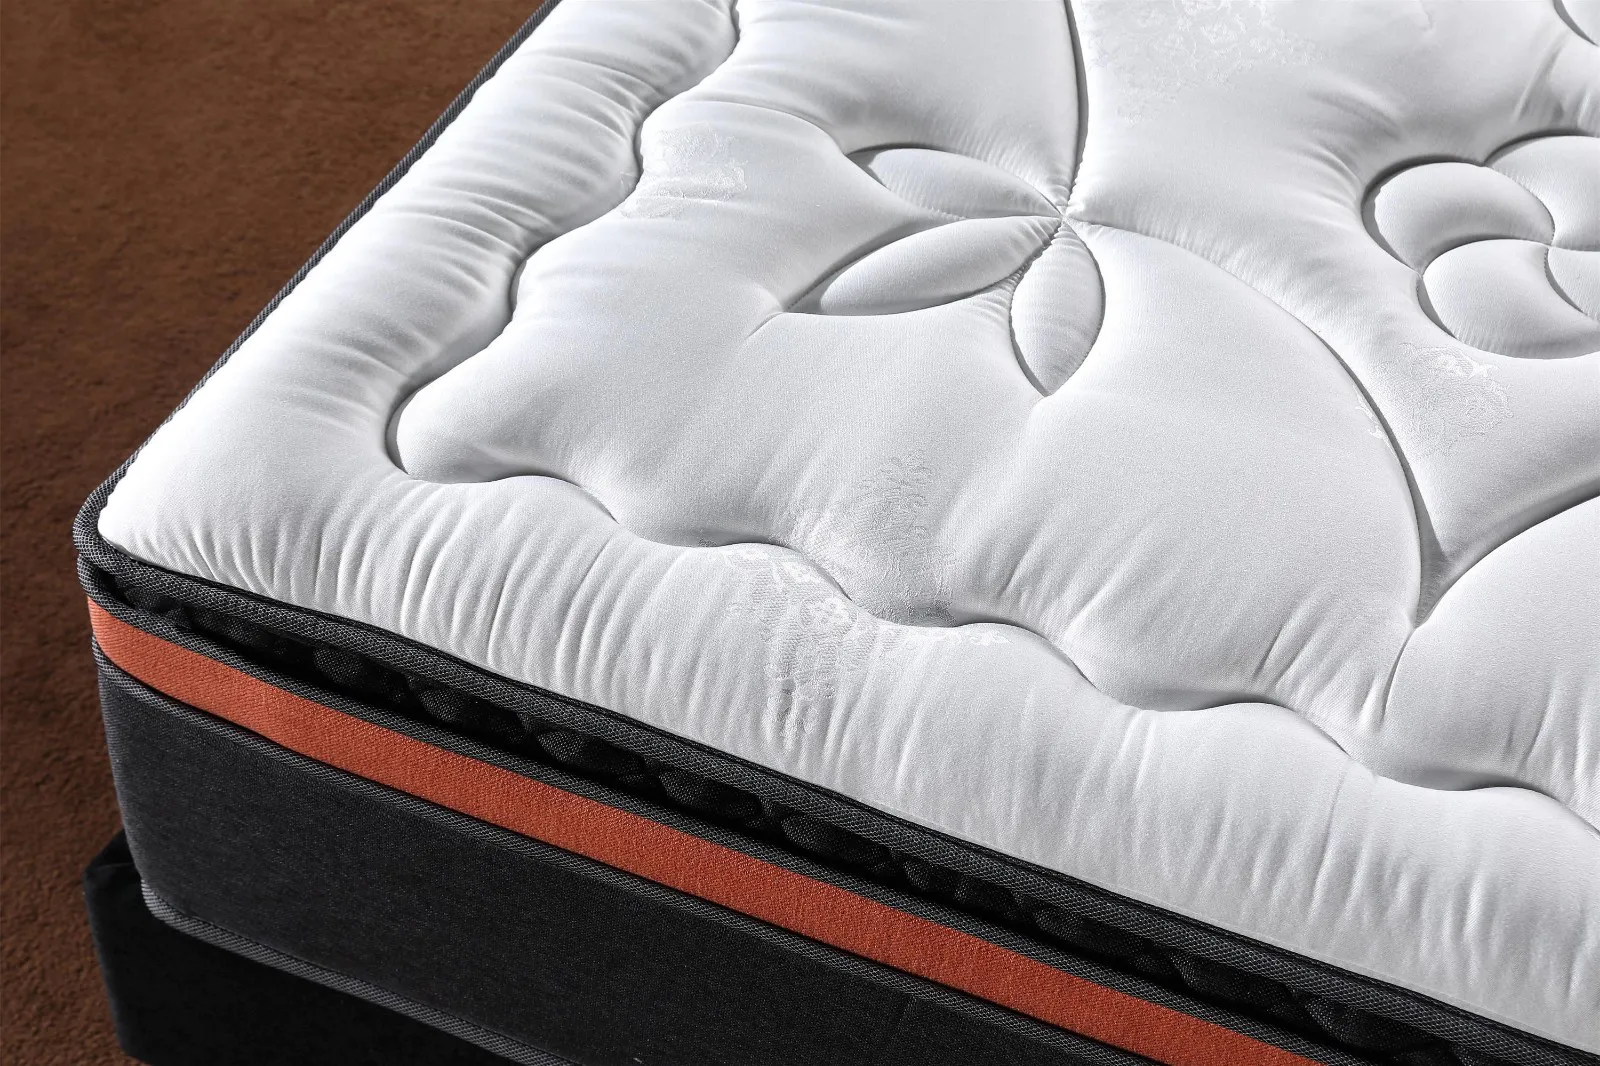 JLH porket mattress manufacturers High Class Fabric with elasticity